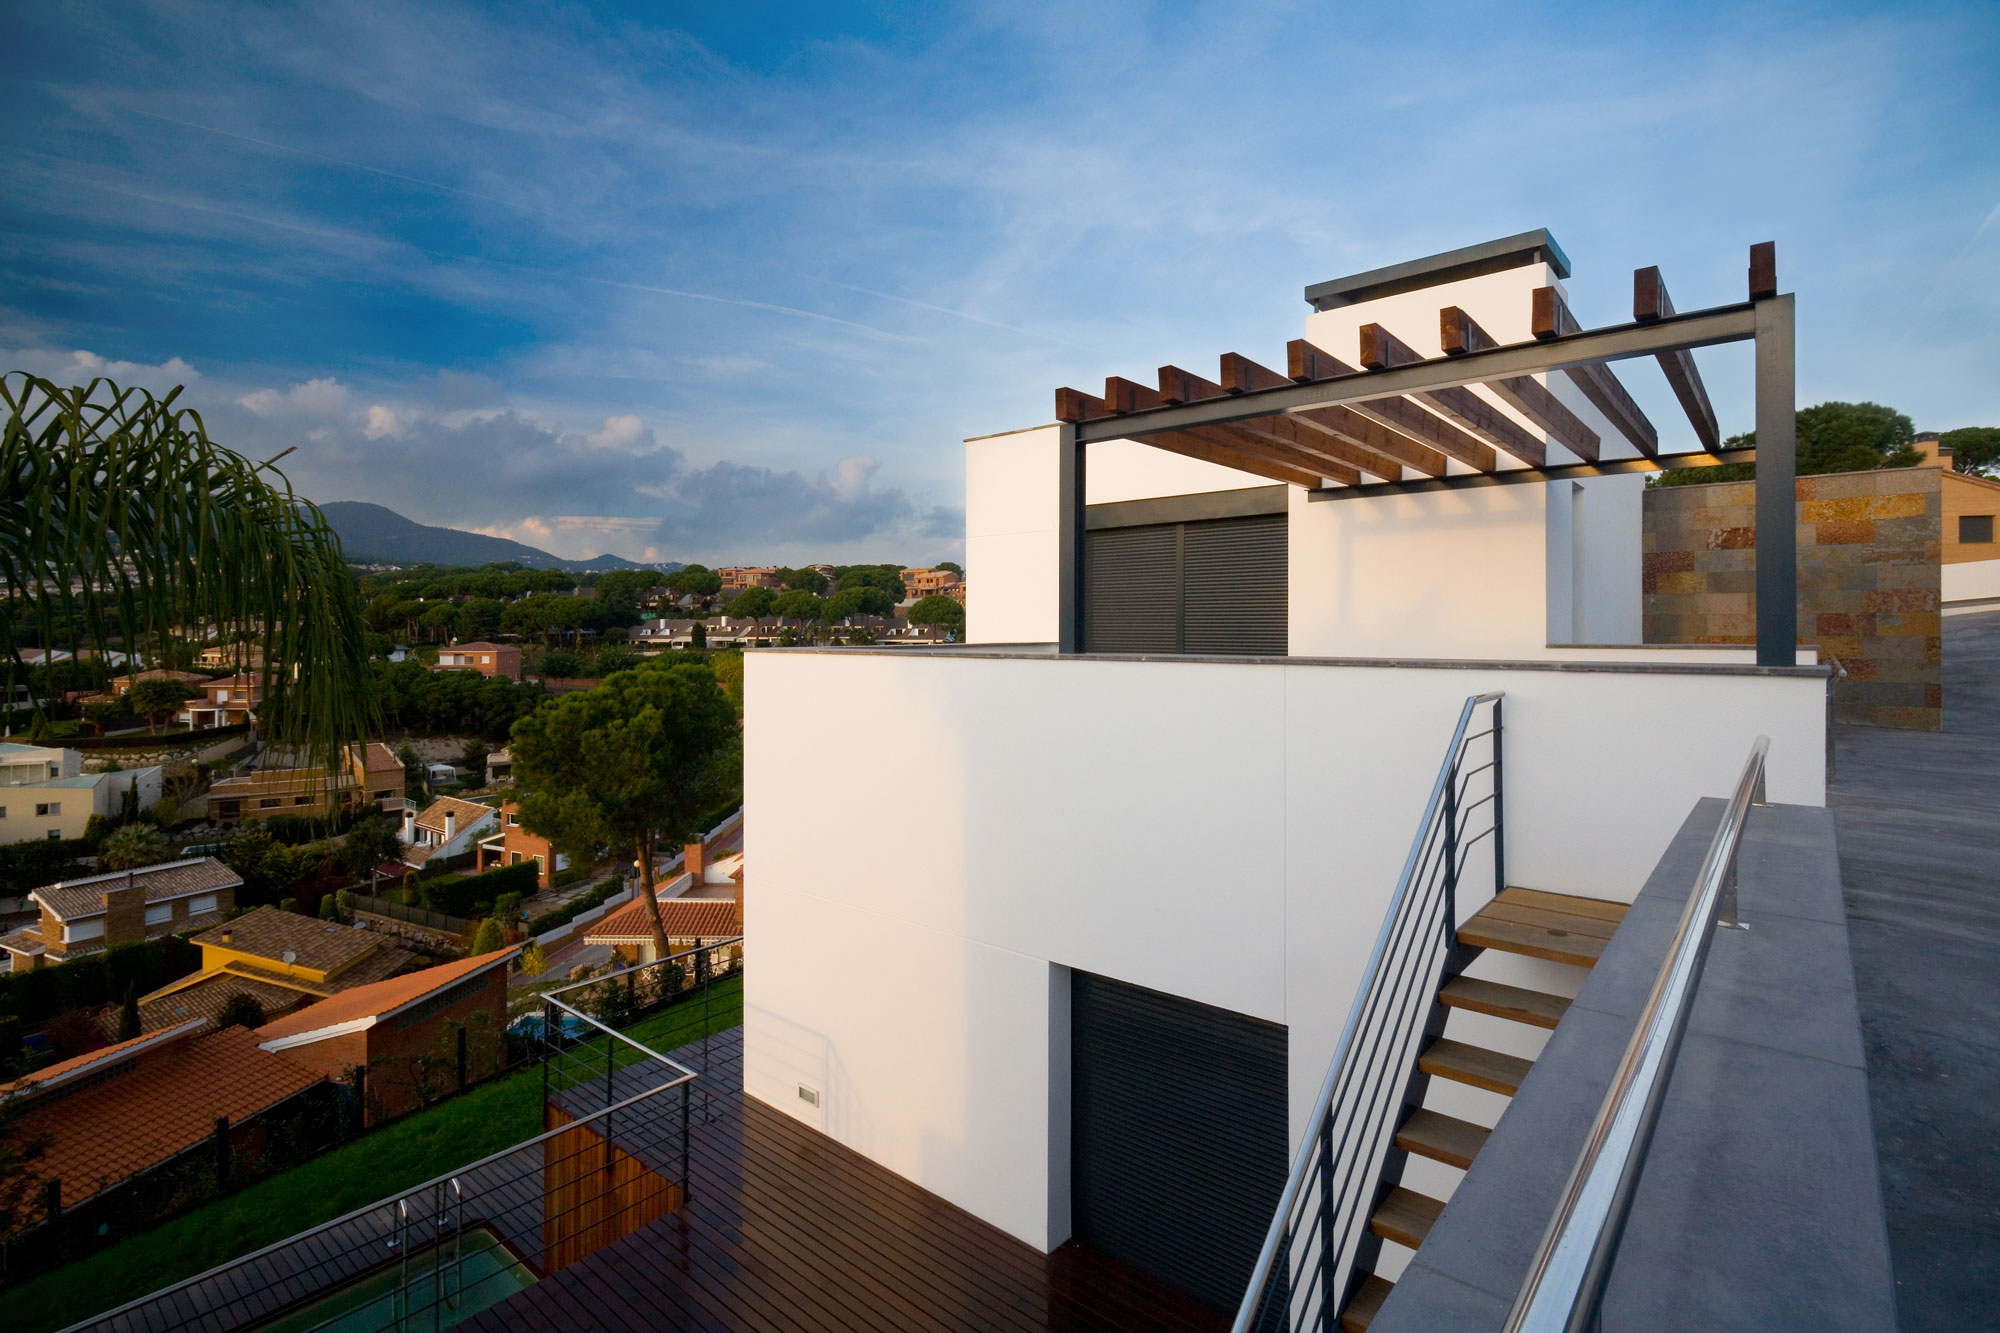 Casa A, moderna vivienda unifamiliar, diseñada por Mehr Studio